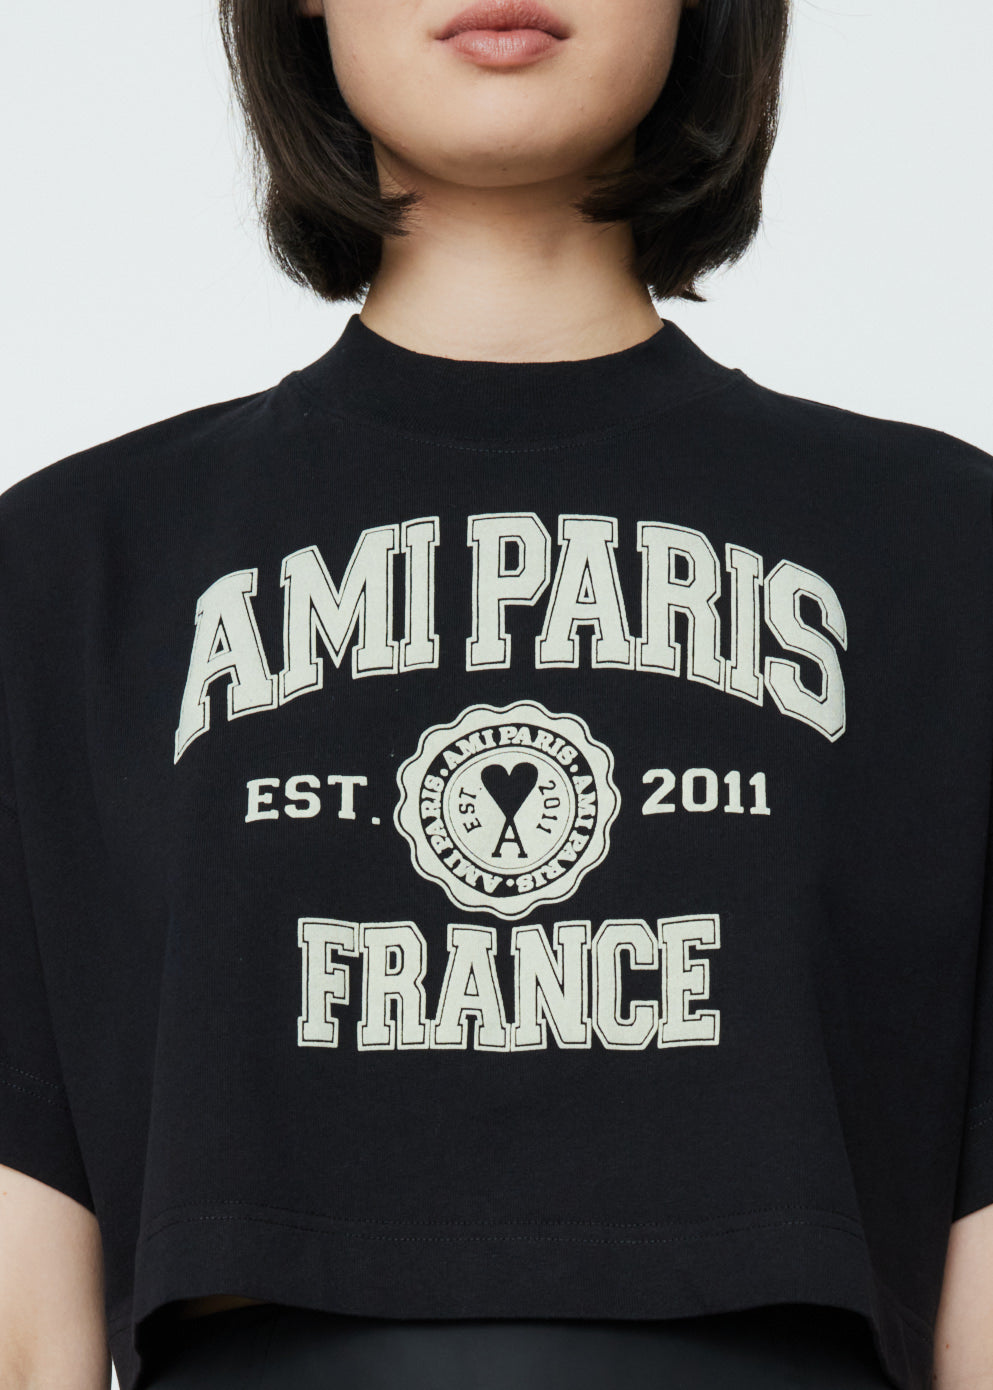 Legit Check - Ami Paris T-shirt : r/DesignerReps